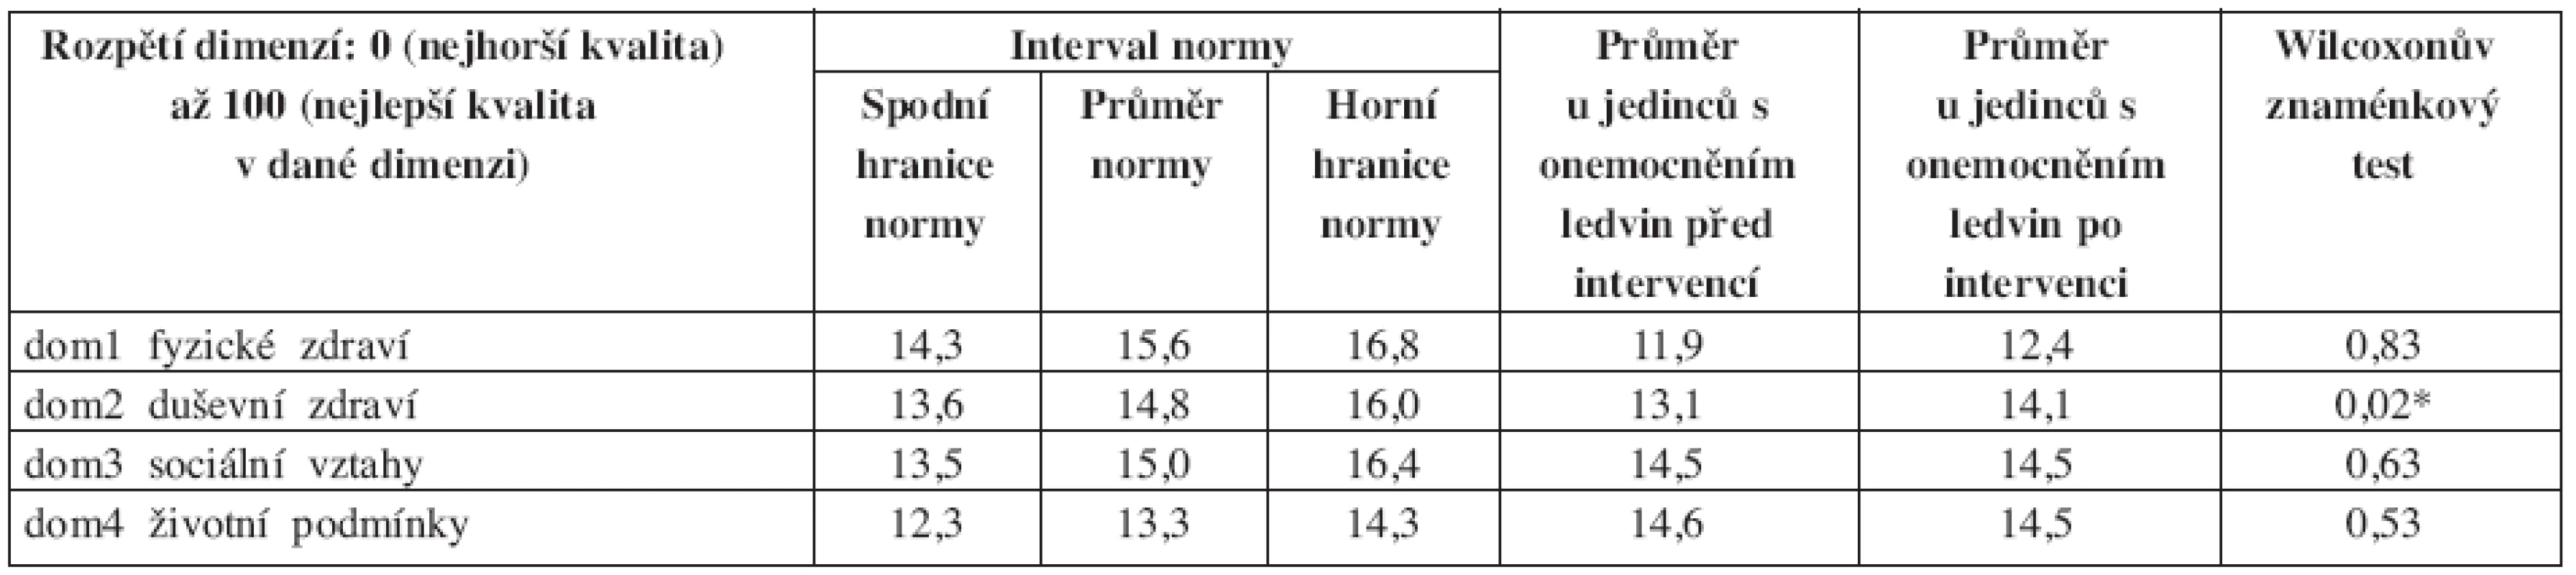 Výsledky WHOQOL-BREF: srovnání populačních norem ČR a průměrných hodnot u sledovaného souboru před a po absolvování 6měsíční pohybové intervence, statistická významnost rozdílu vstupních a výstupních doménových hodnot.